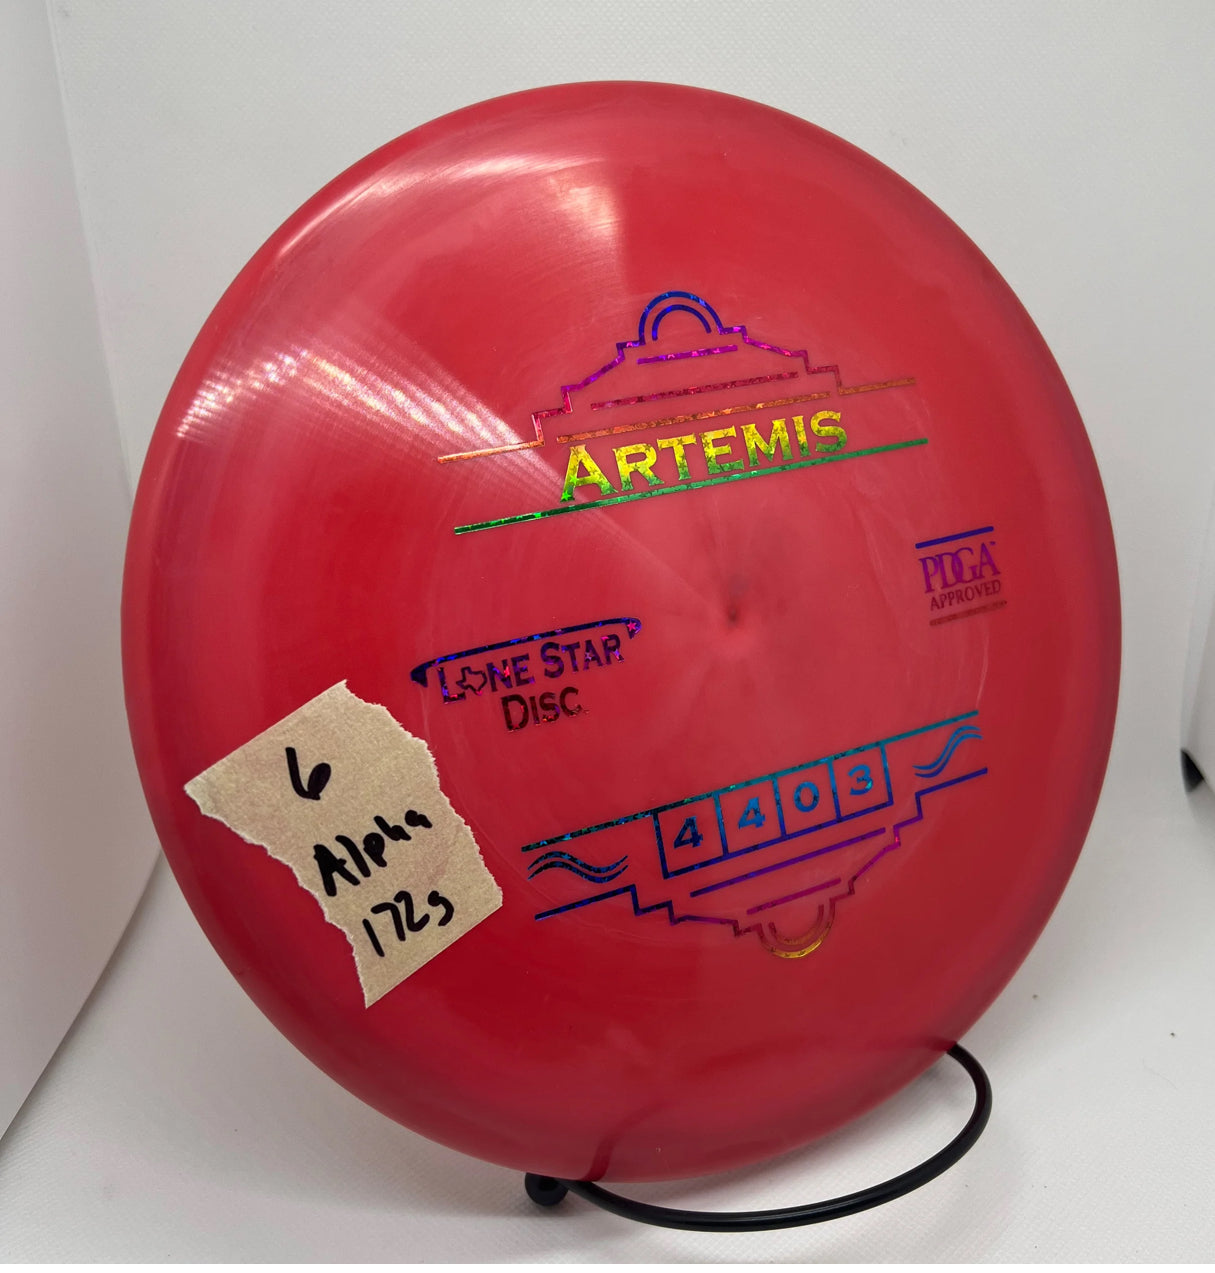 Lonestar disc alpha plastic Artemis